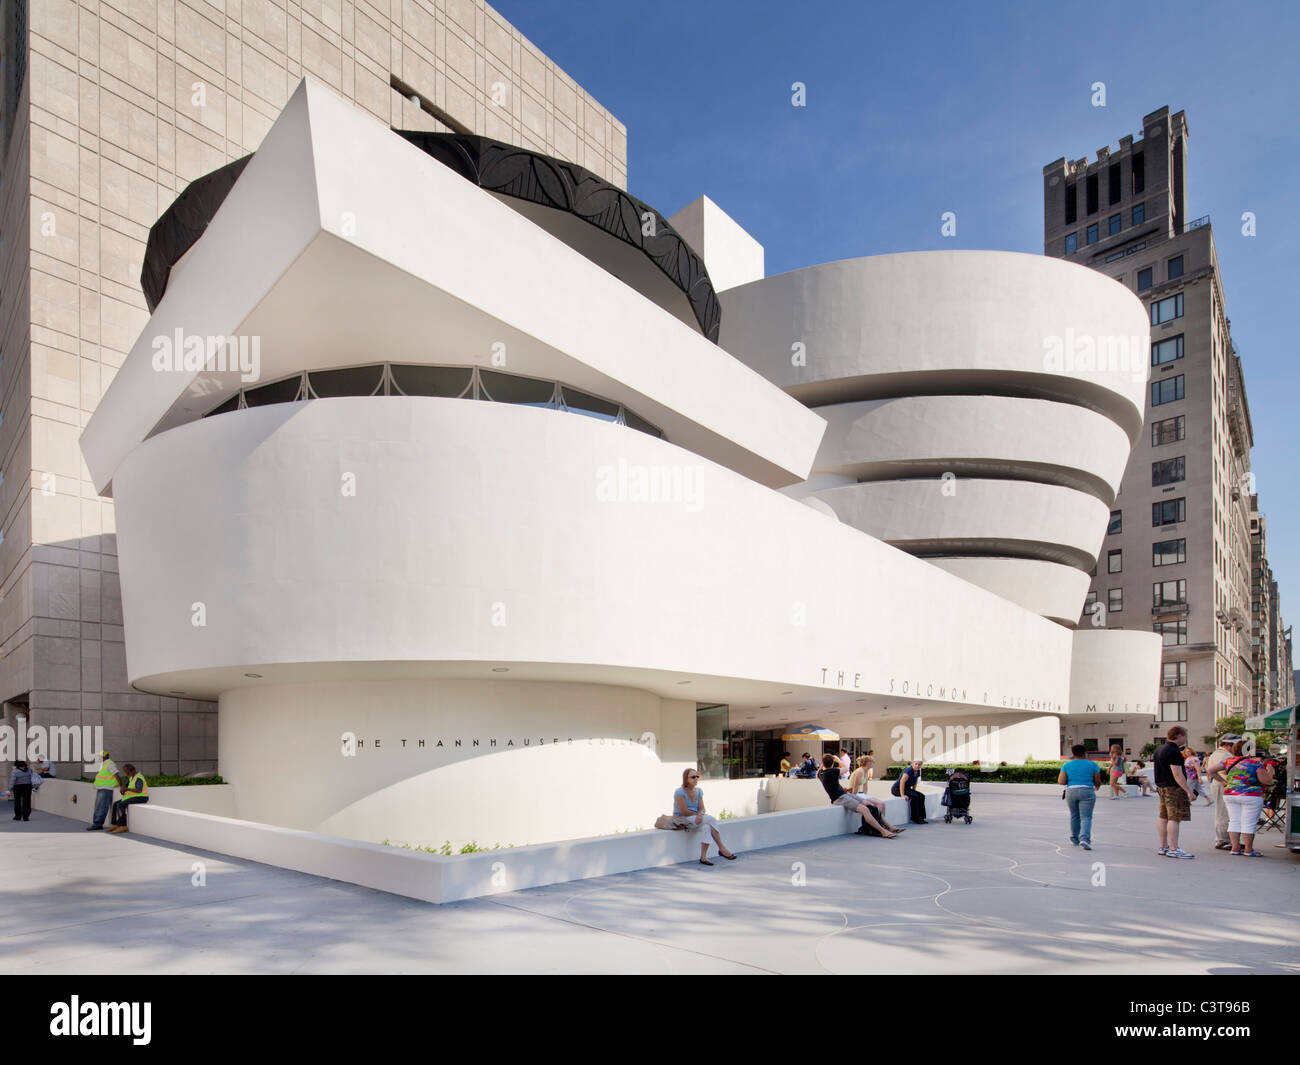 Solomon R Guggenheim Museum, New York Stock Photo